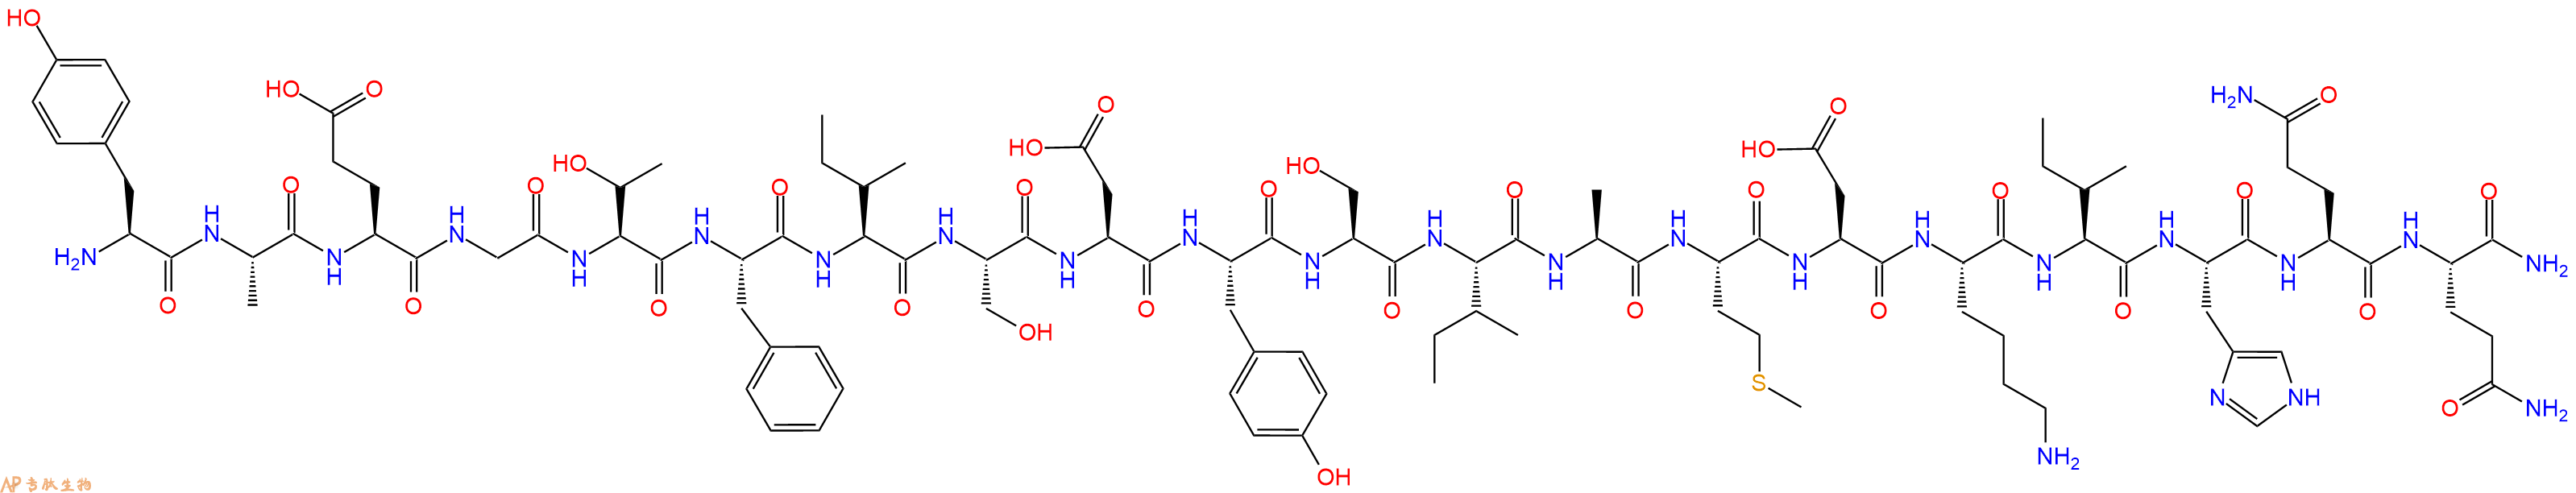 专肽生物产品GIP (1-30) amide,human198624-01-0